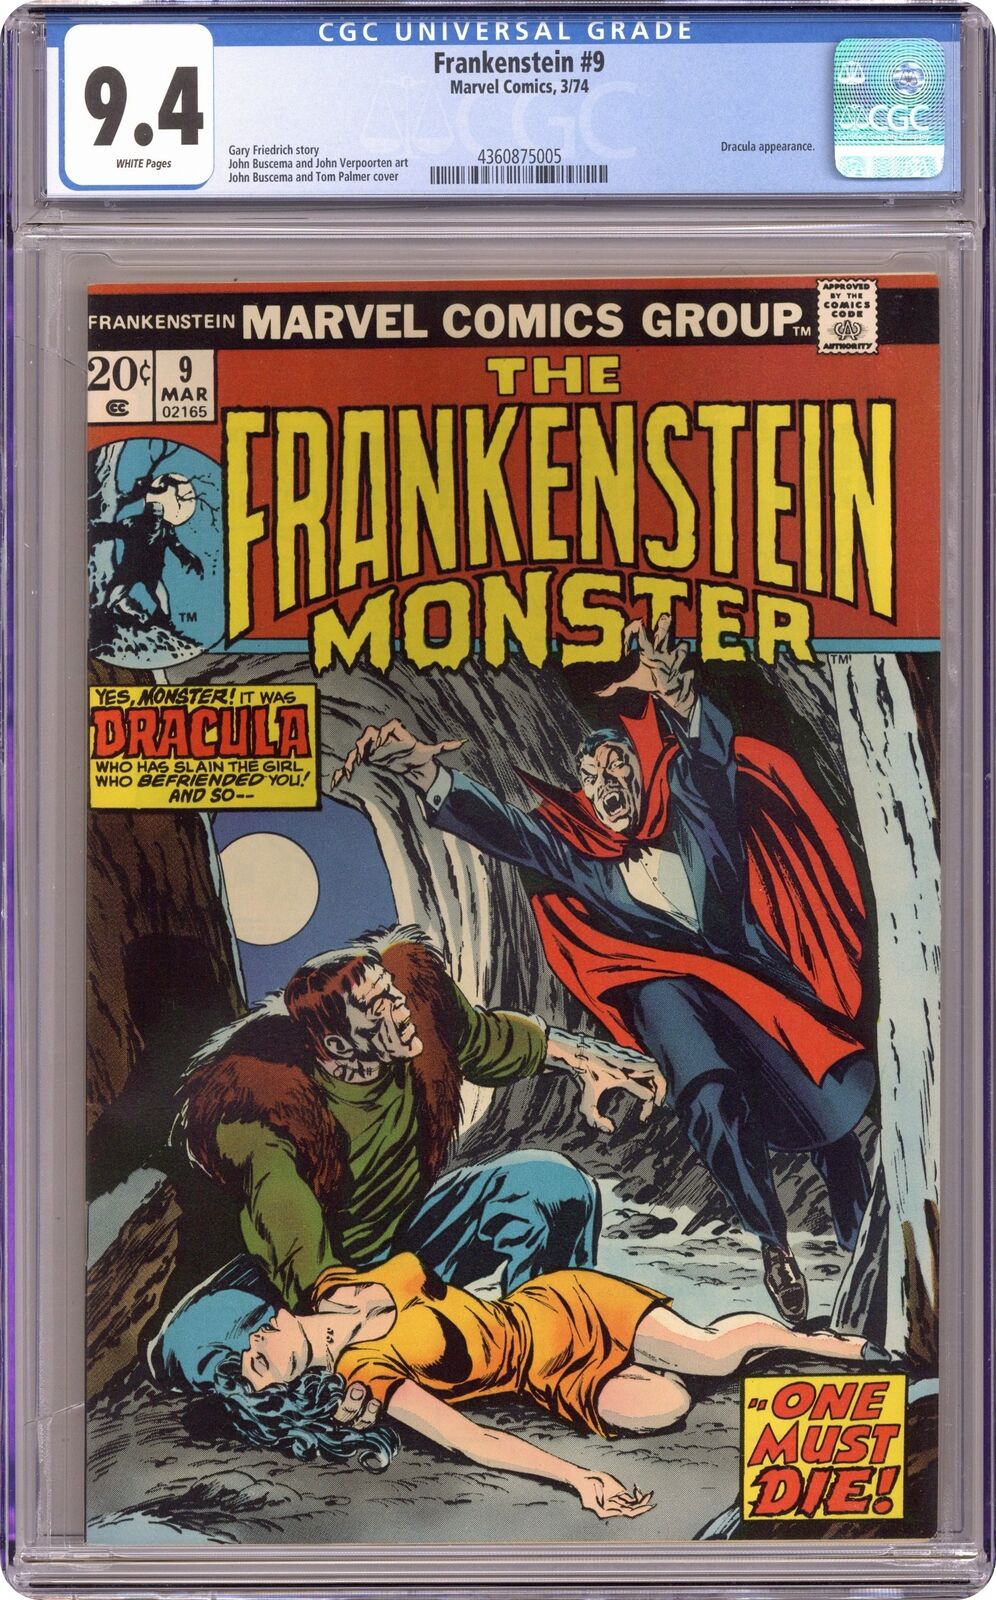 Frankenstein #9 CGC 9.4 1974 4360875005